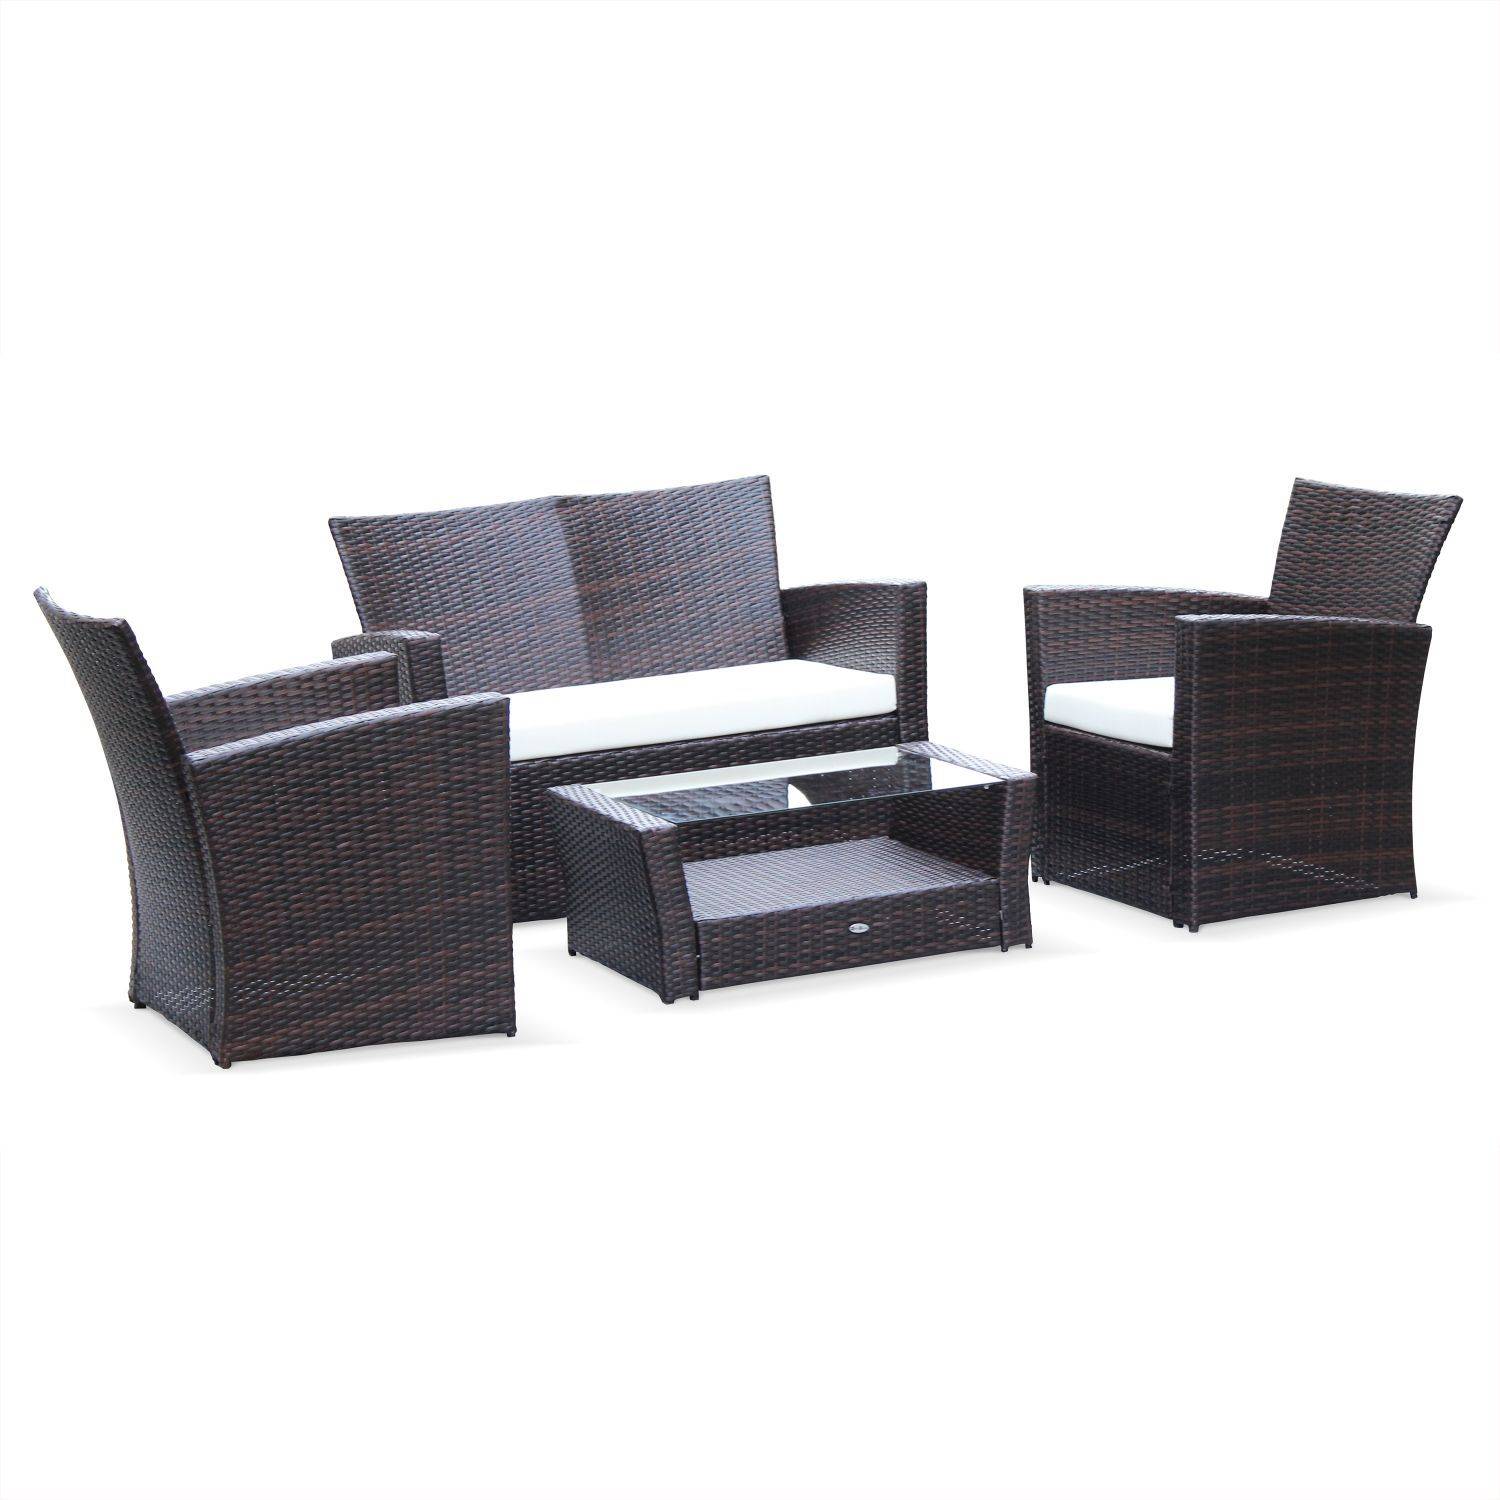 Asti -  set van 1 sofa, 2 fauteuils en 1 salontafel van rondgevlochten hars. Photo1